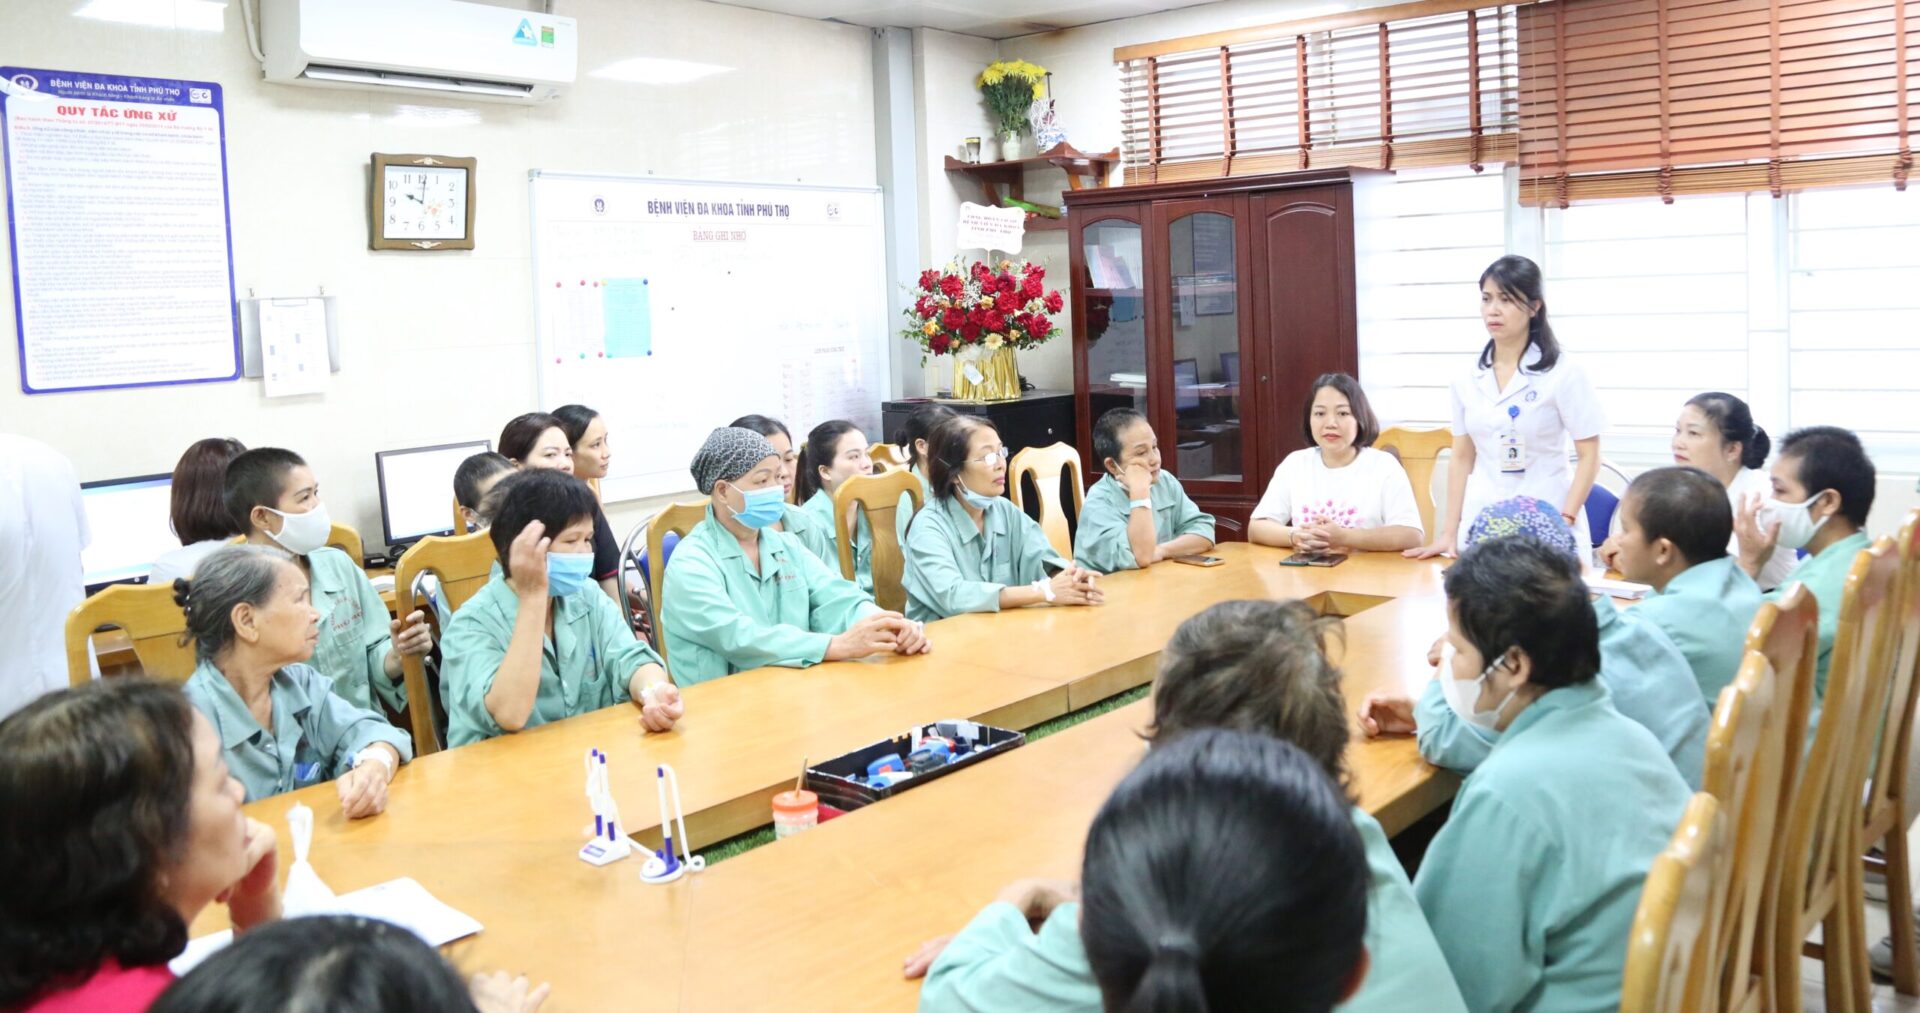 BS CKII. Lê Na – Phó giám đốc BVĐK tỉnh Phú Thọ gửi lời cảm ơn đến CLB đã đồng hành cùng Bệnh viện